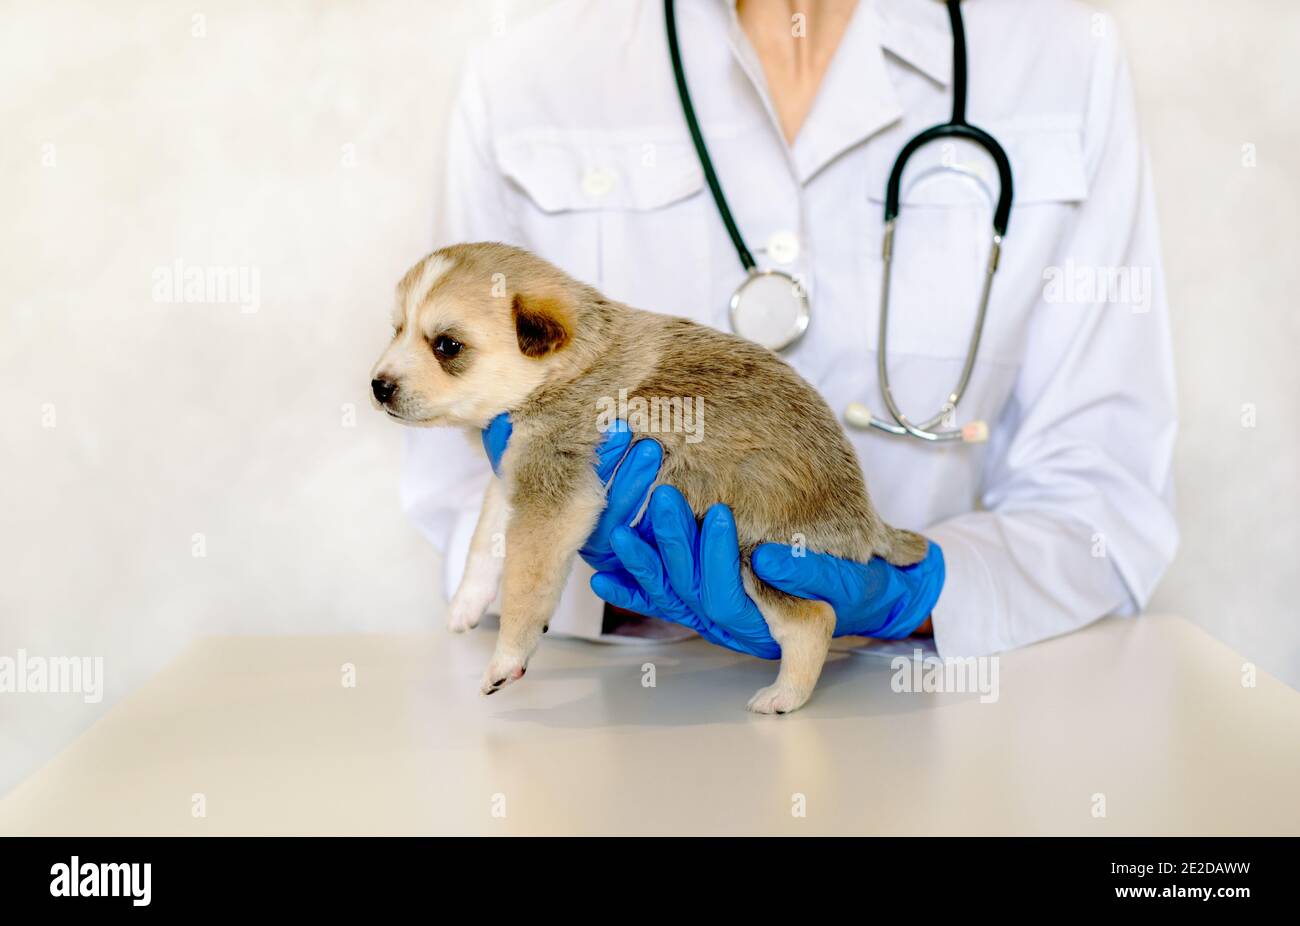 Tierarzt Untersuchung eines niedlichen Hund in der medizinischen Office.Pet Pflege in der Tierklinik. Hände eines jungen Spezialisten.Mongrel, reinrassig Hund Stockfoto